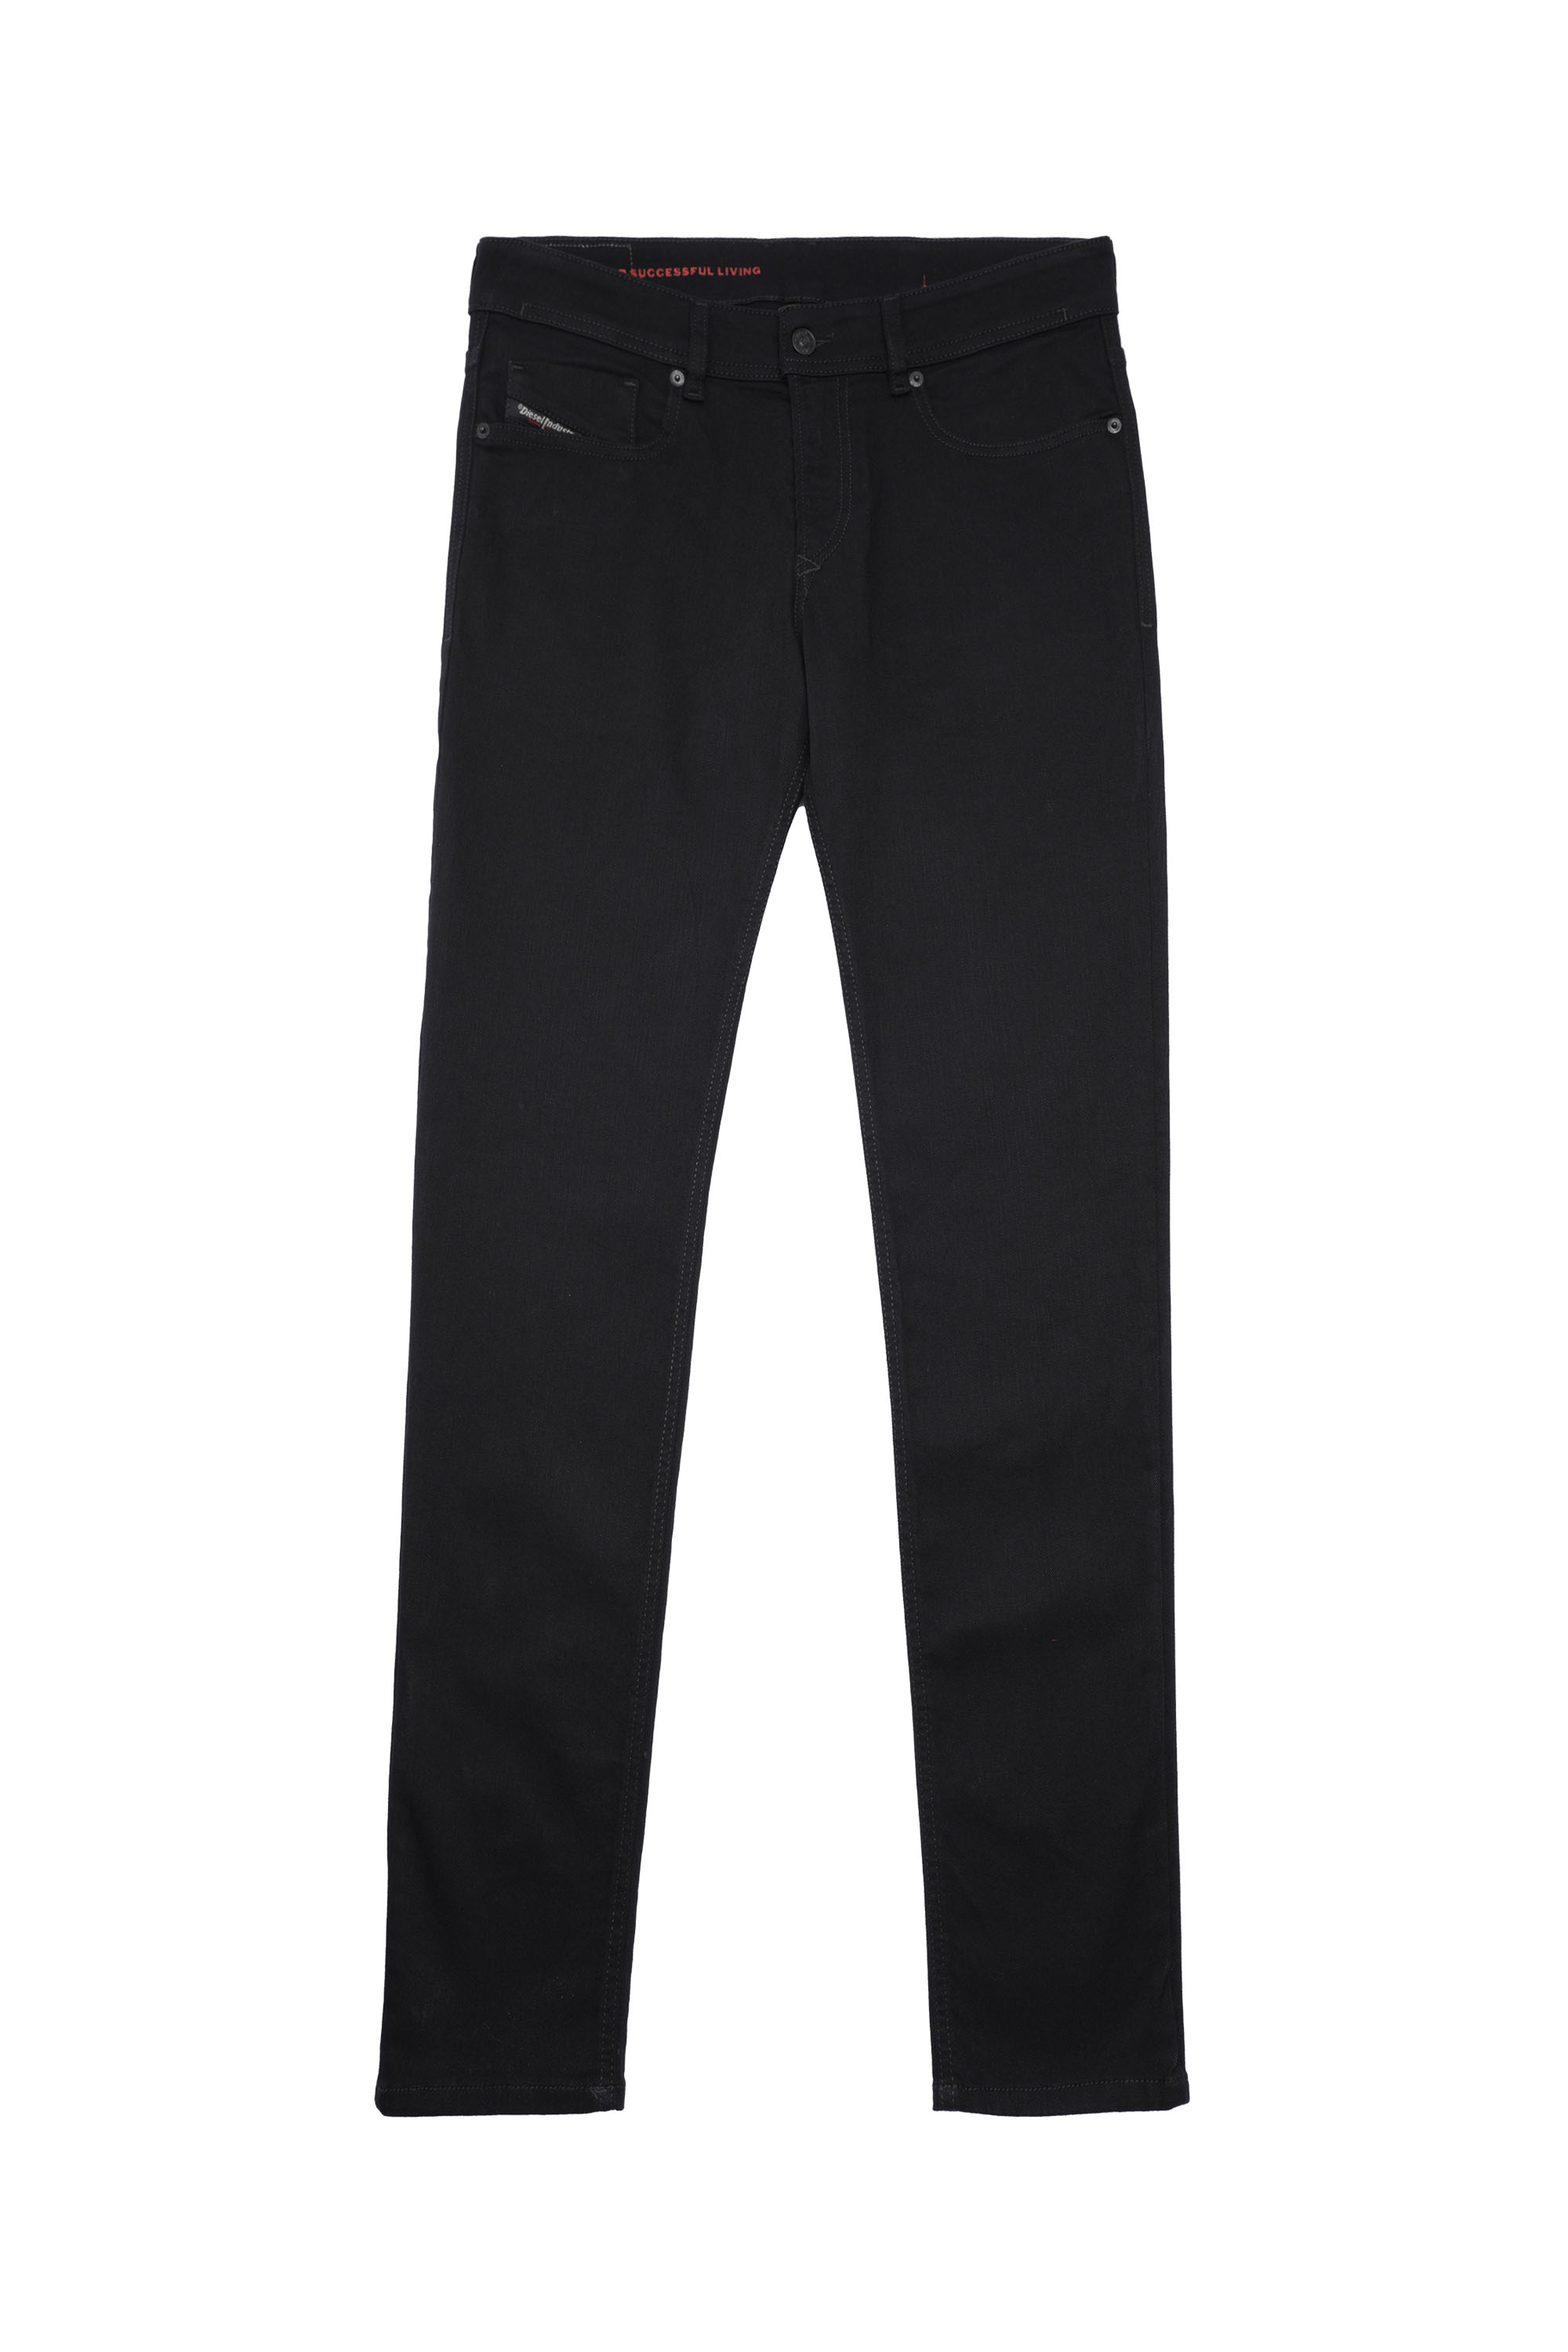 1979 SLEENKER 09C51 Skinny Jeans, Black/Dark grey - Jeans